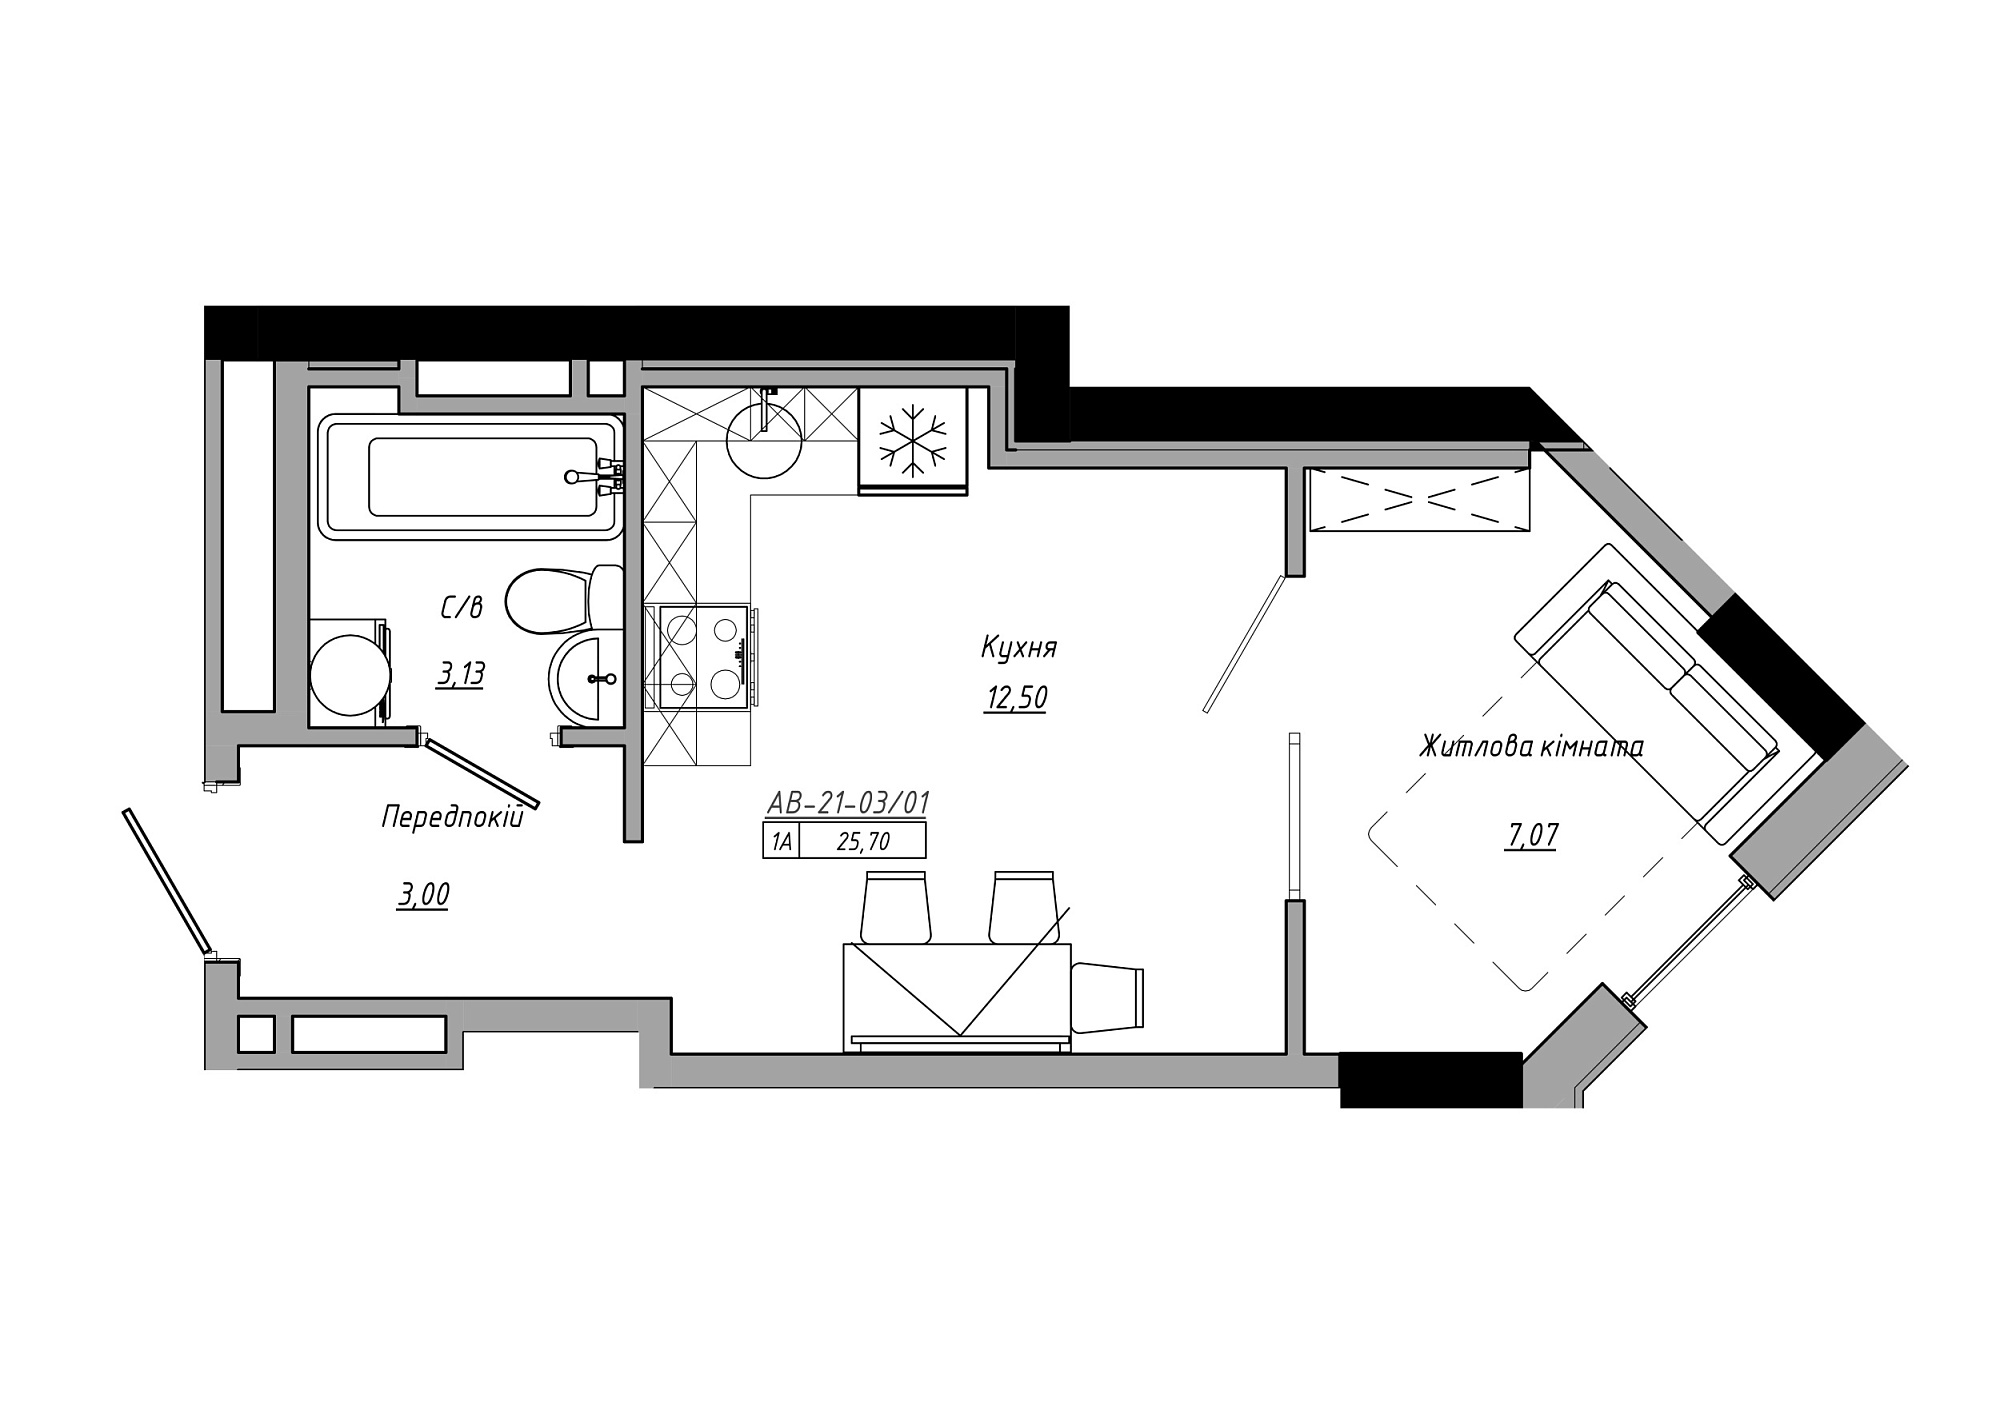 Планировка 1-к квартира площей 25.7м2, AB-21-03/00001.